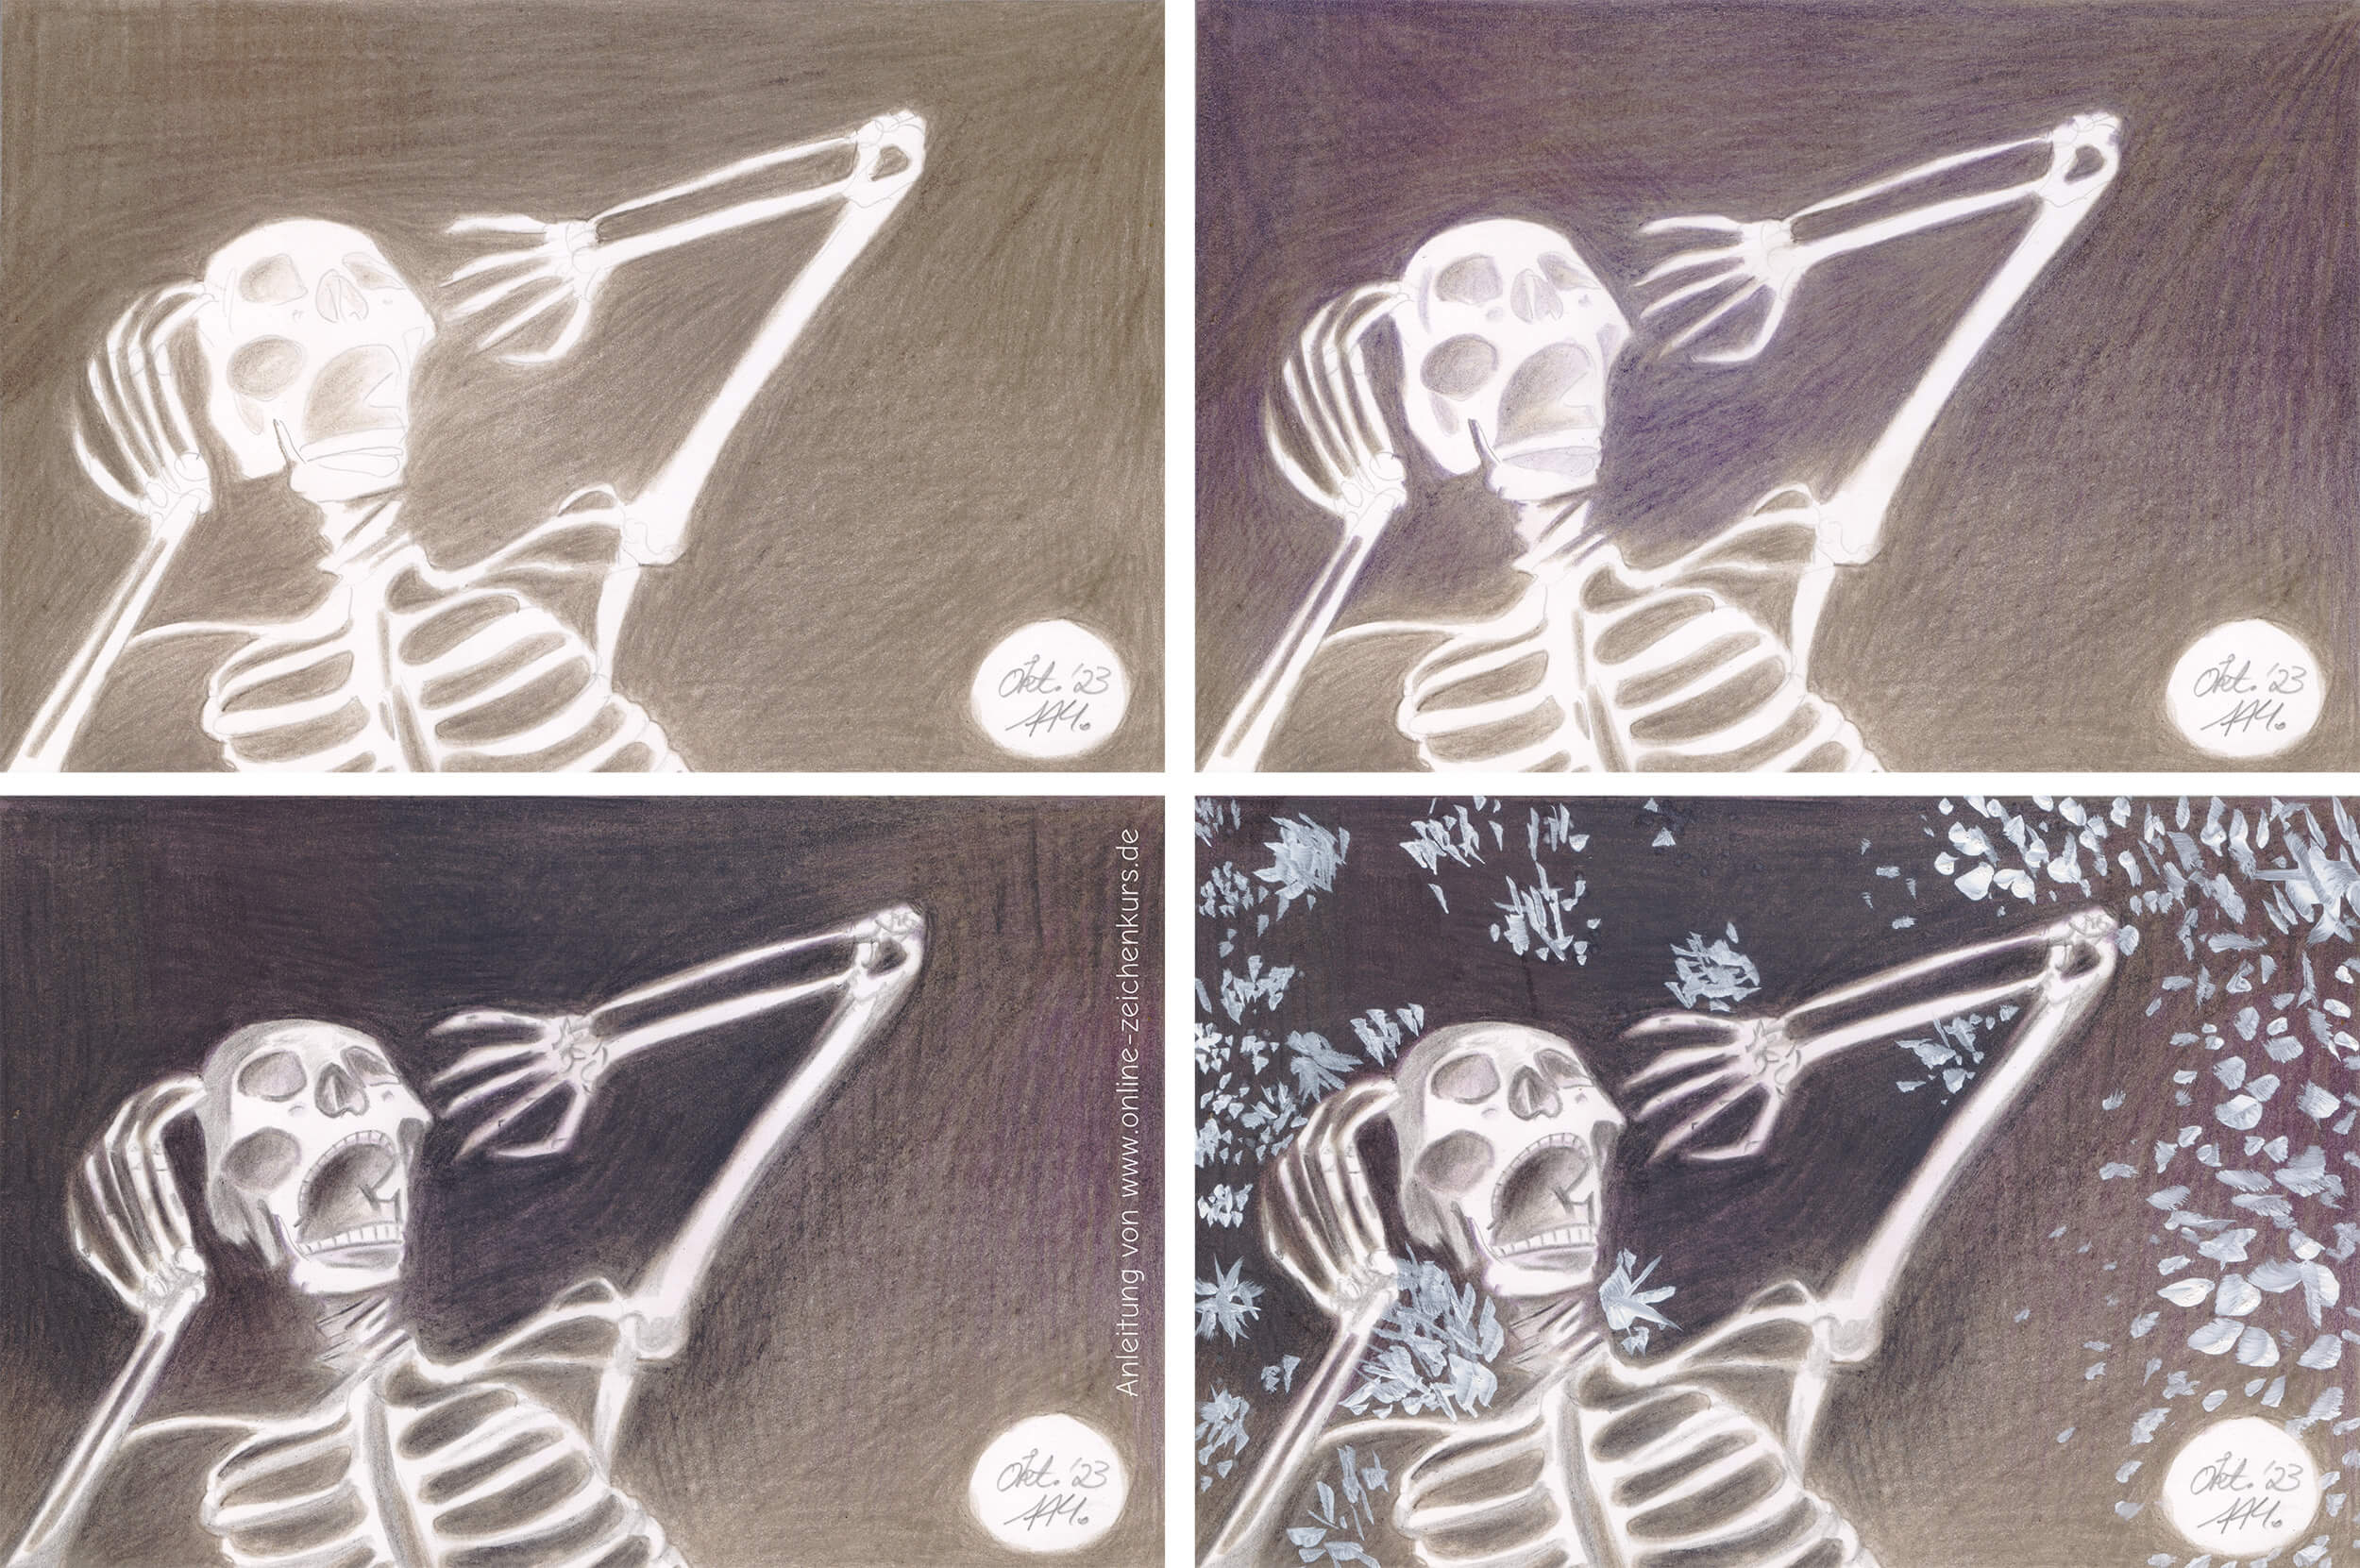 Gruselgrüße: Skelett zeichnen - Schritt für Schritt Entstehung